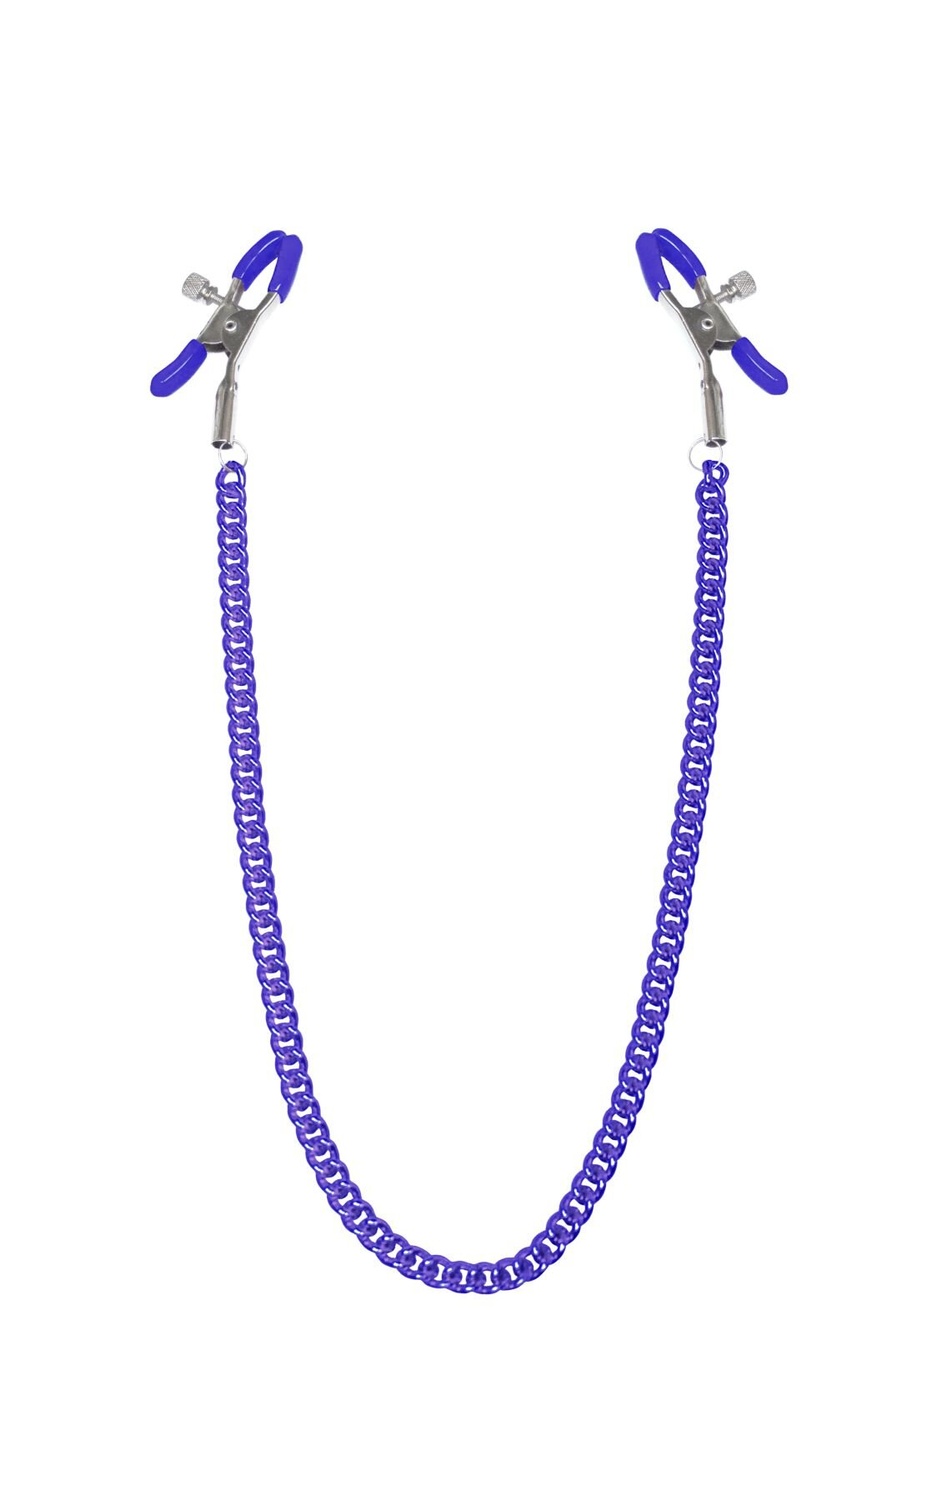 Затискачі для сосків з ланцюжком Feral Feelings — Nipple clamps Classic, фіолетовий фото